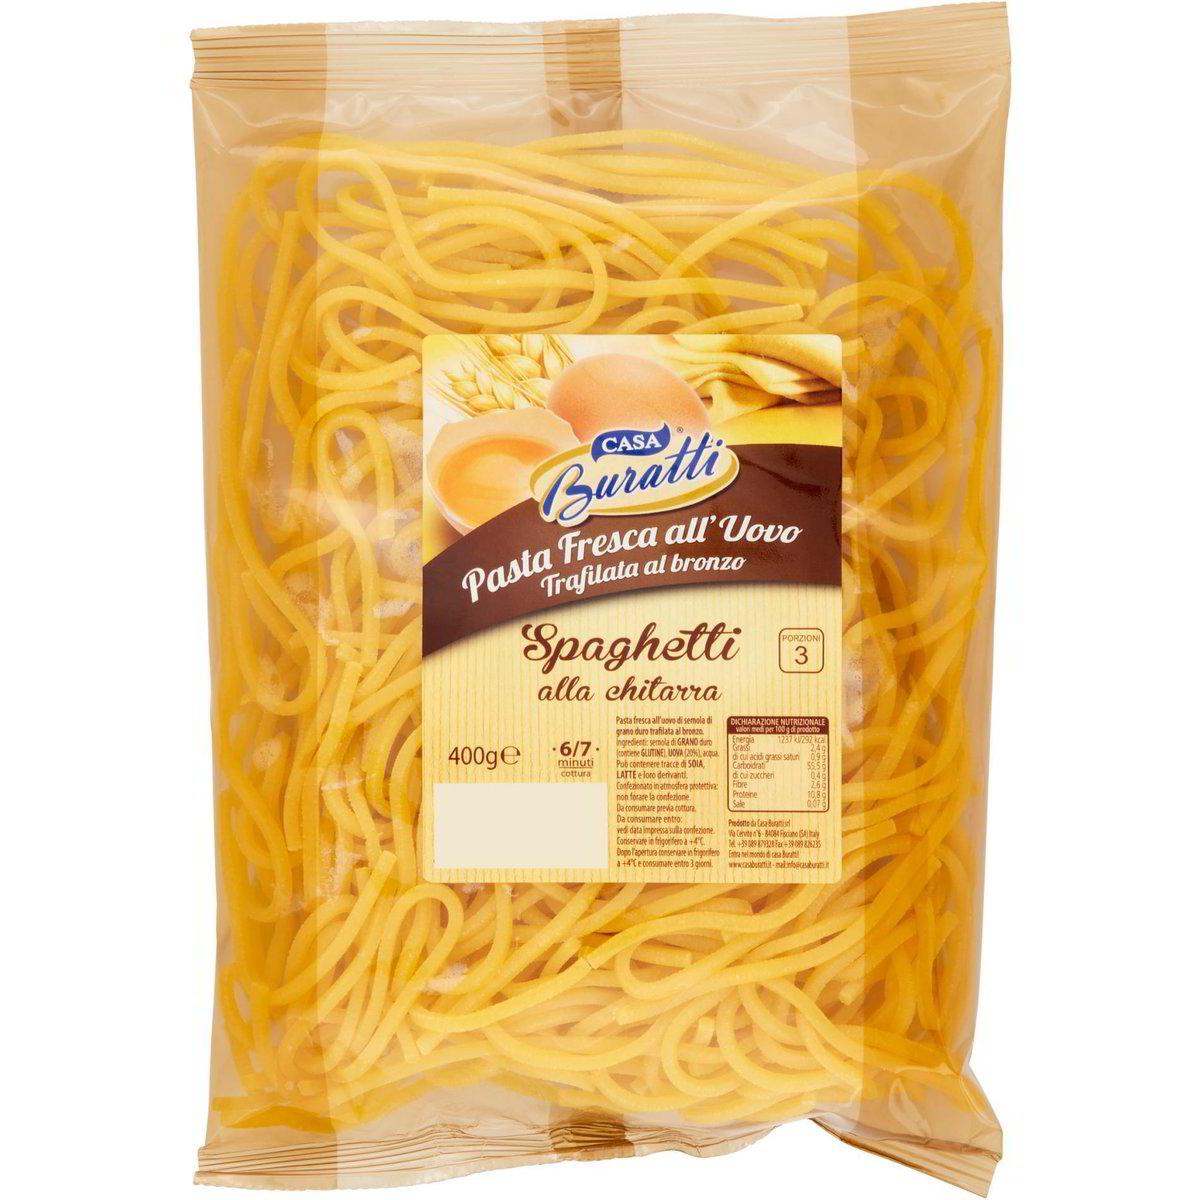 Spaghetti alla chitarra pasta fresca all'uovo CASA BURATTI 400 G